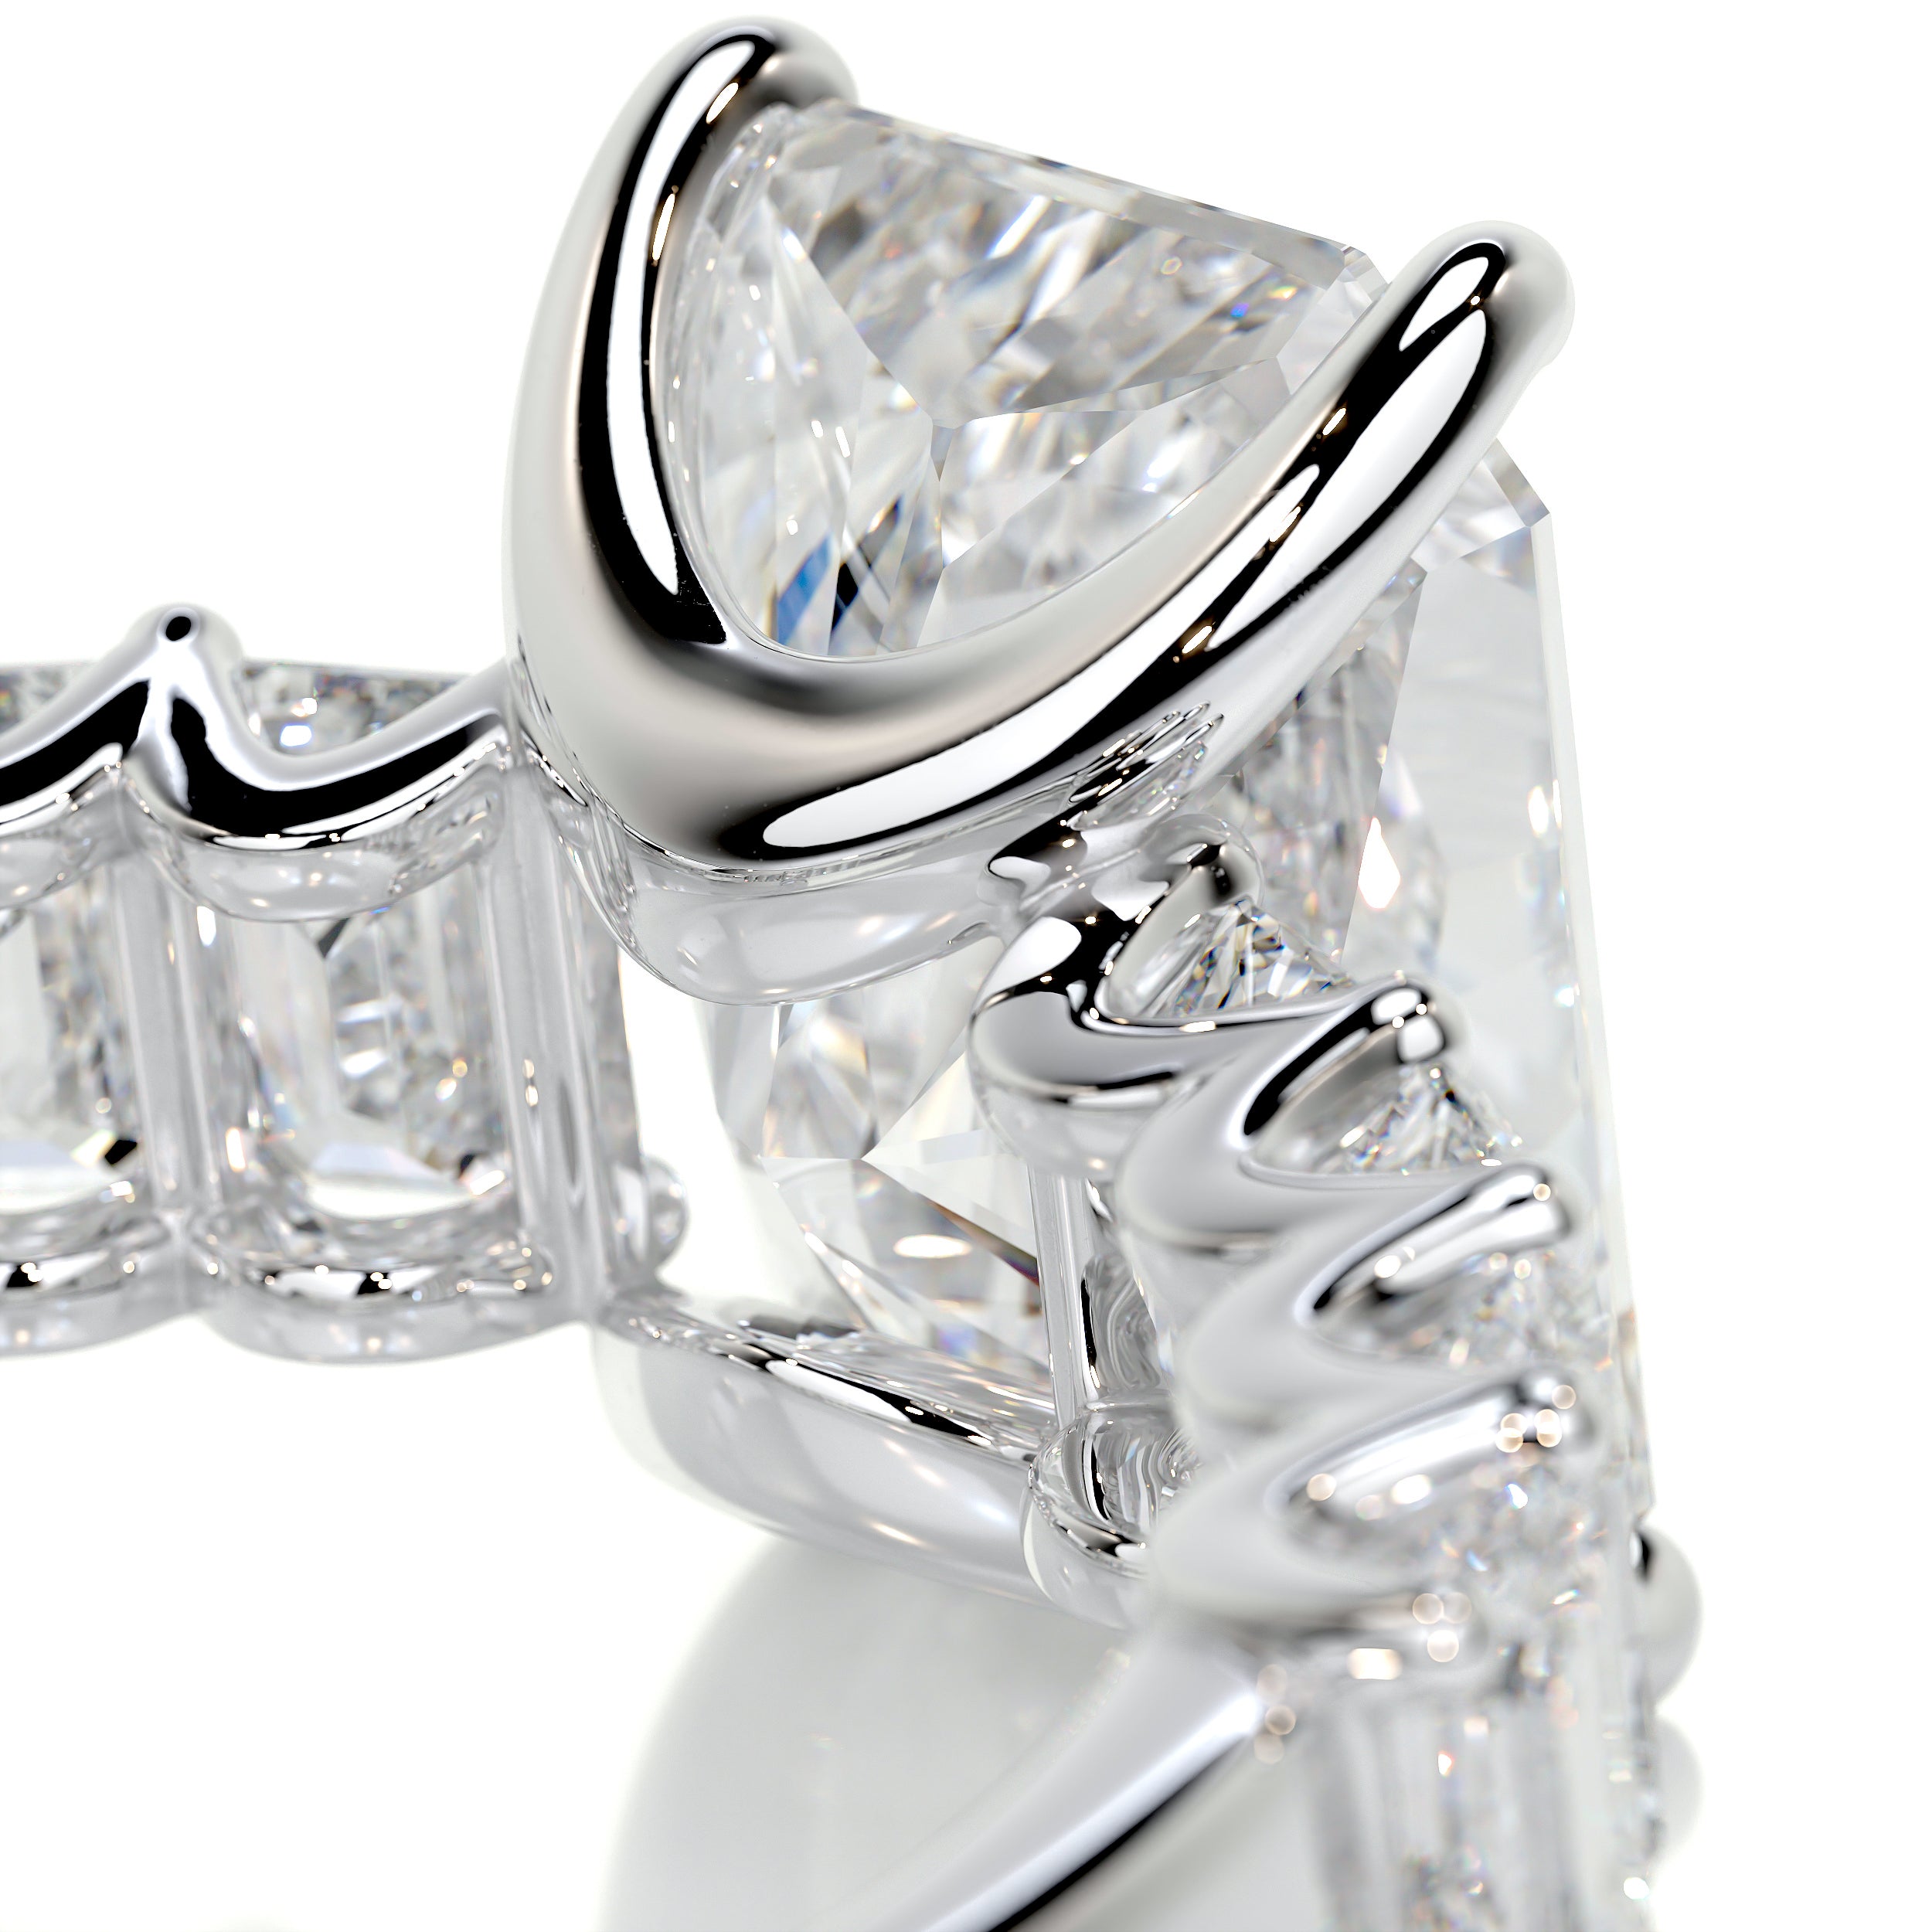 Arabella Diamond Engagement Ring   (5 Carat) -Platinum